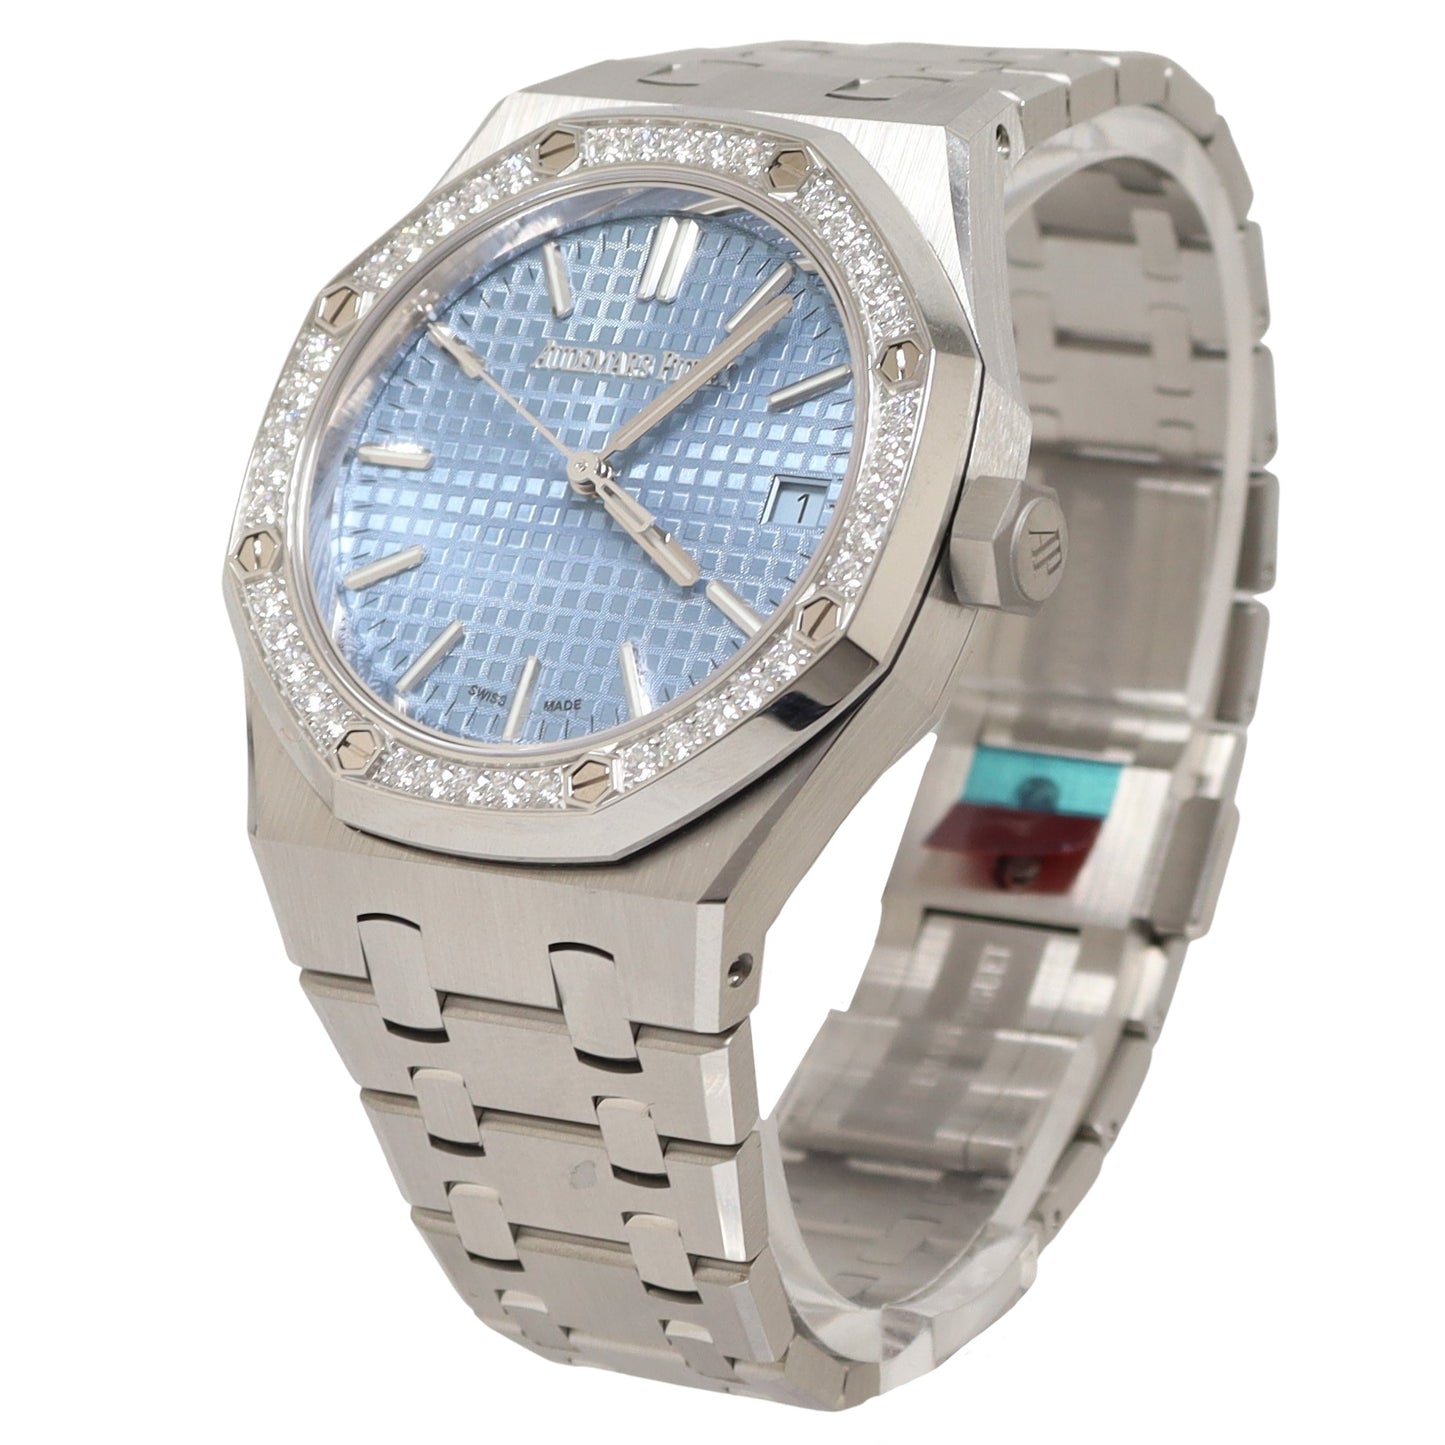 Audemars Piguet Royal Oak Stainless Steel 34mm Light Blue Grande Tapisserie Dial Watch Reference# 77451ST.ZZ.1361ST.01 - Happy Jewelers Fine Jewelry Lifetime Warranty